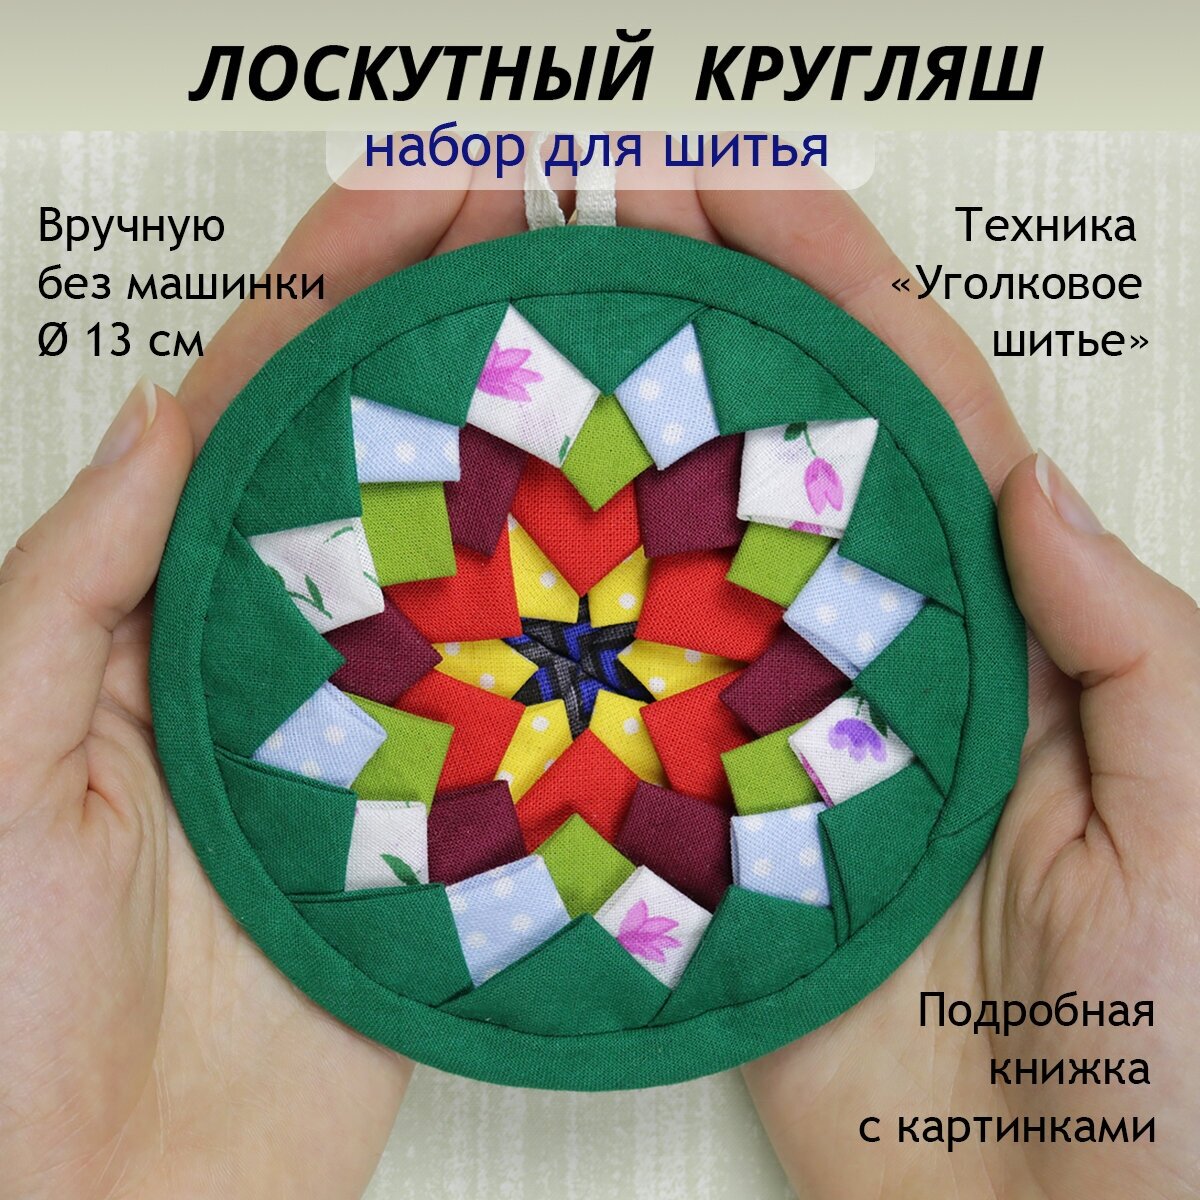 Лоскутная мозаика из ткани, набор для шитья коврика кругляша в технике "Уголковое шитье" вручную без швейной машины, подвеска мандала